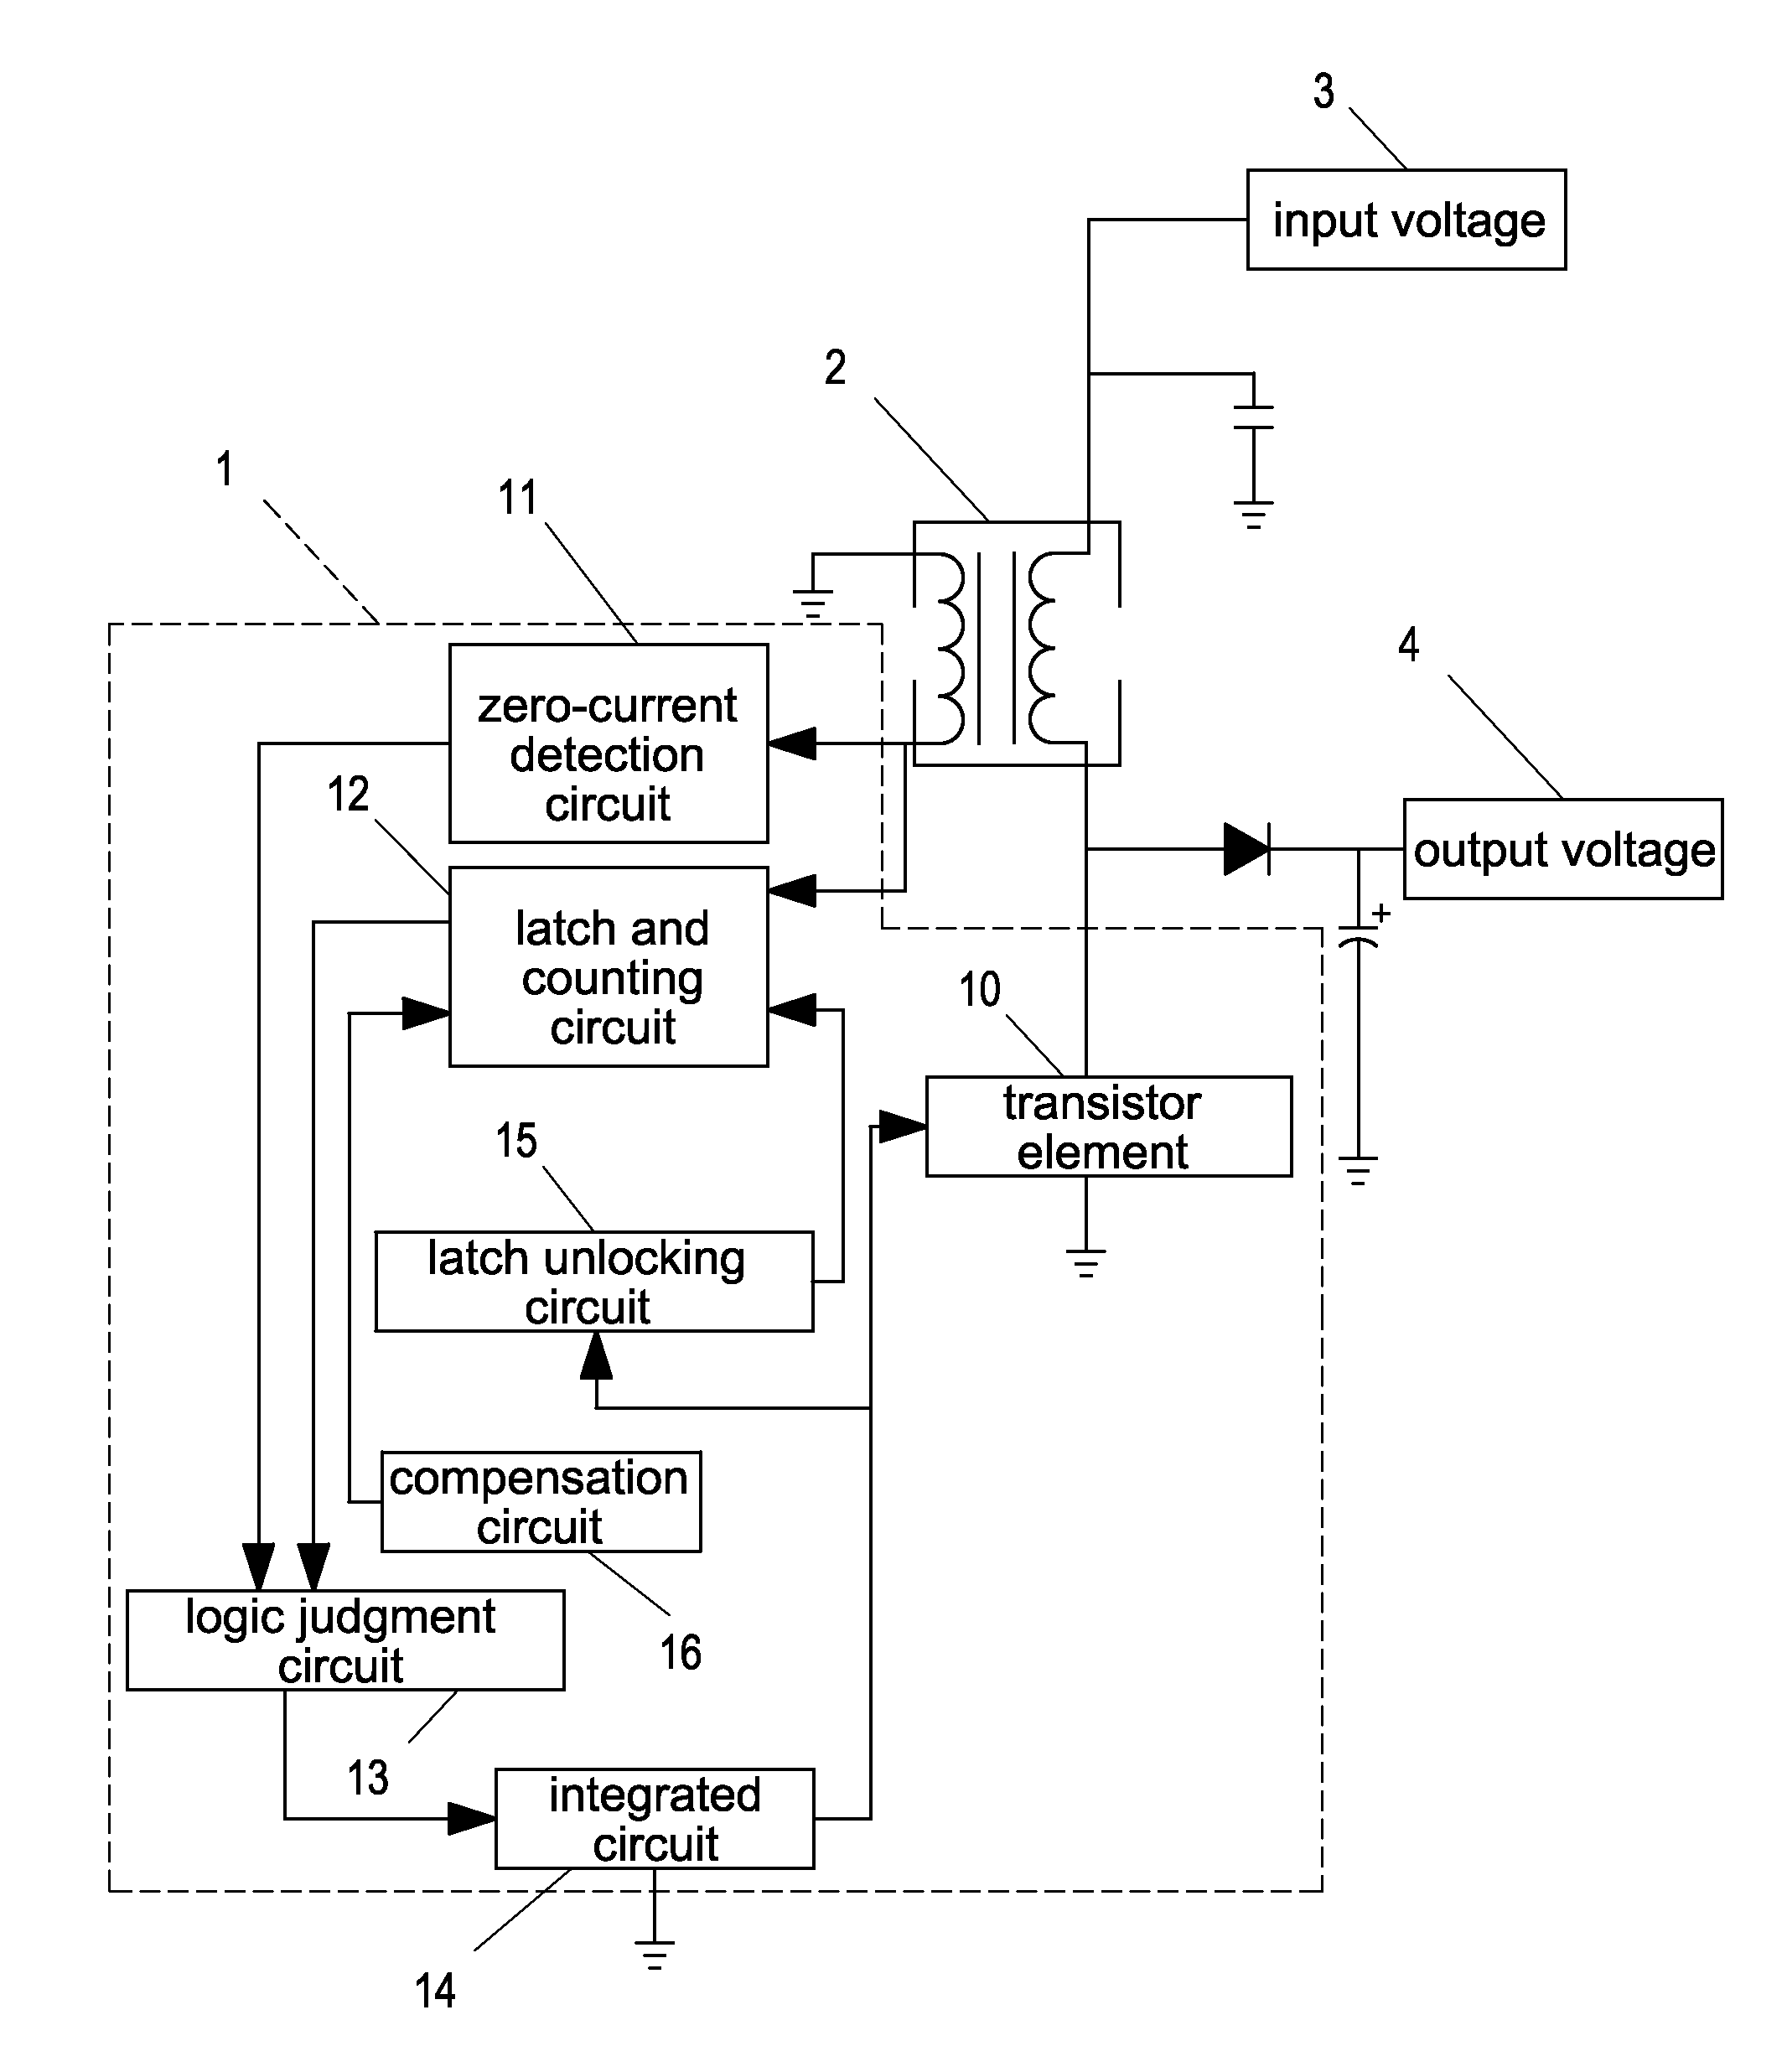 Control circuit module for power factor corrector